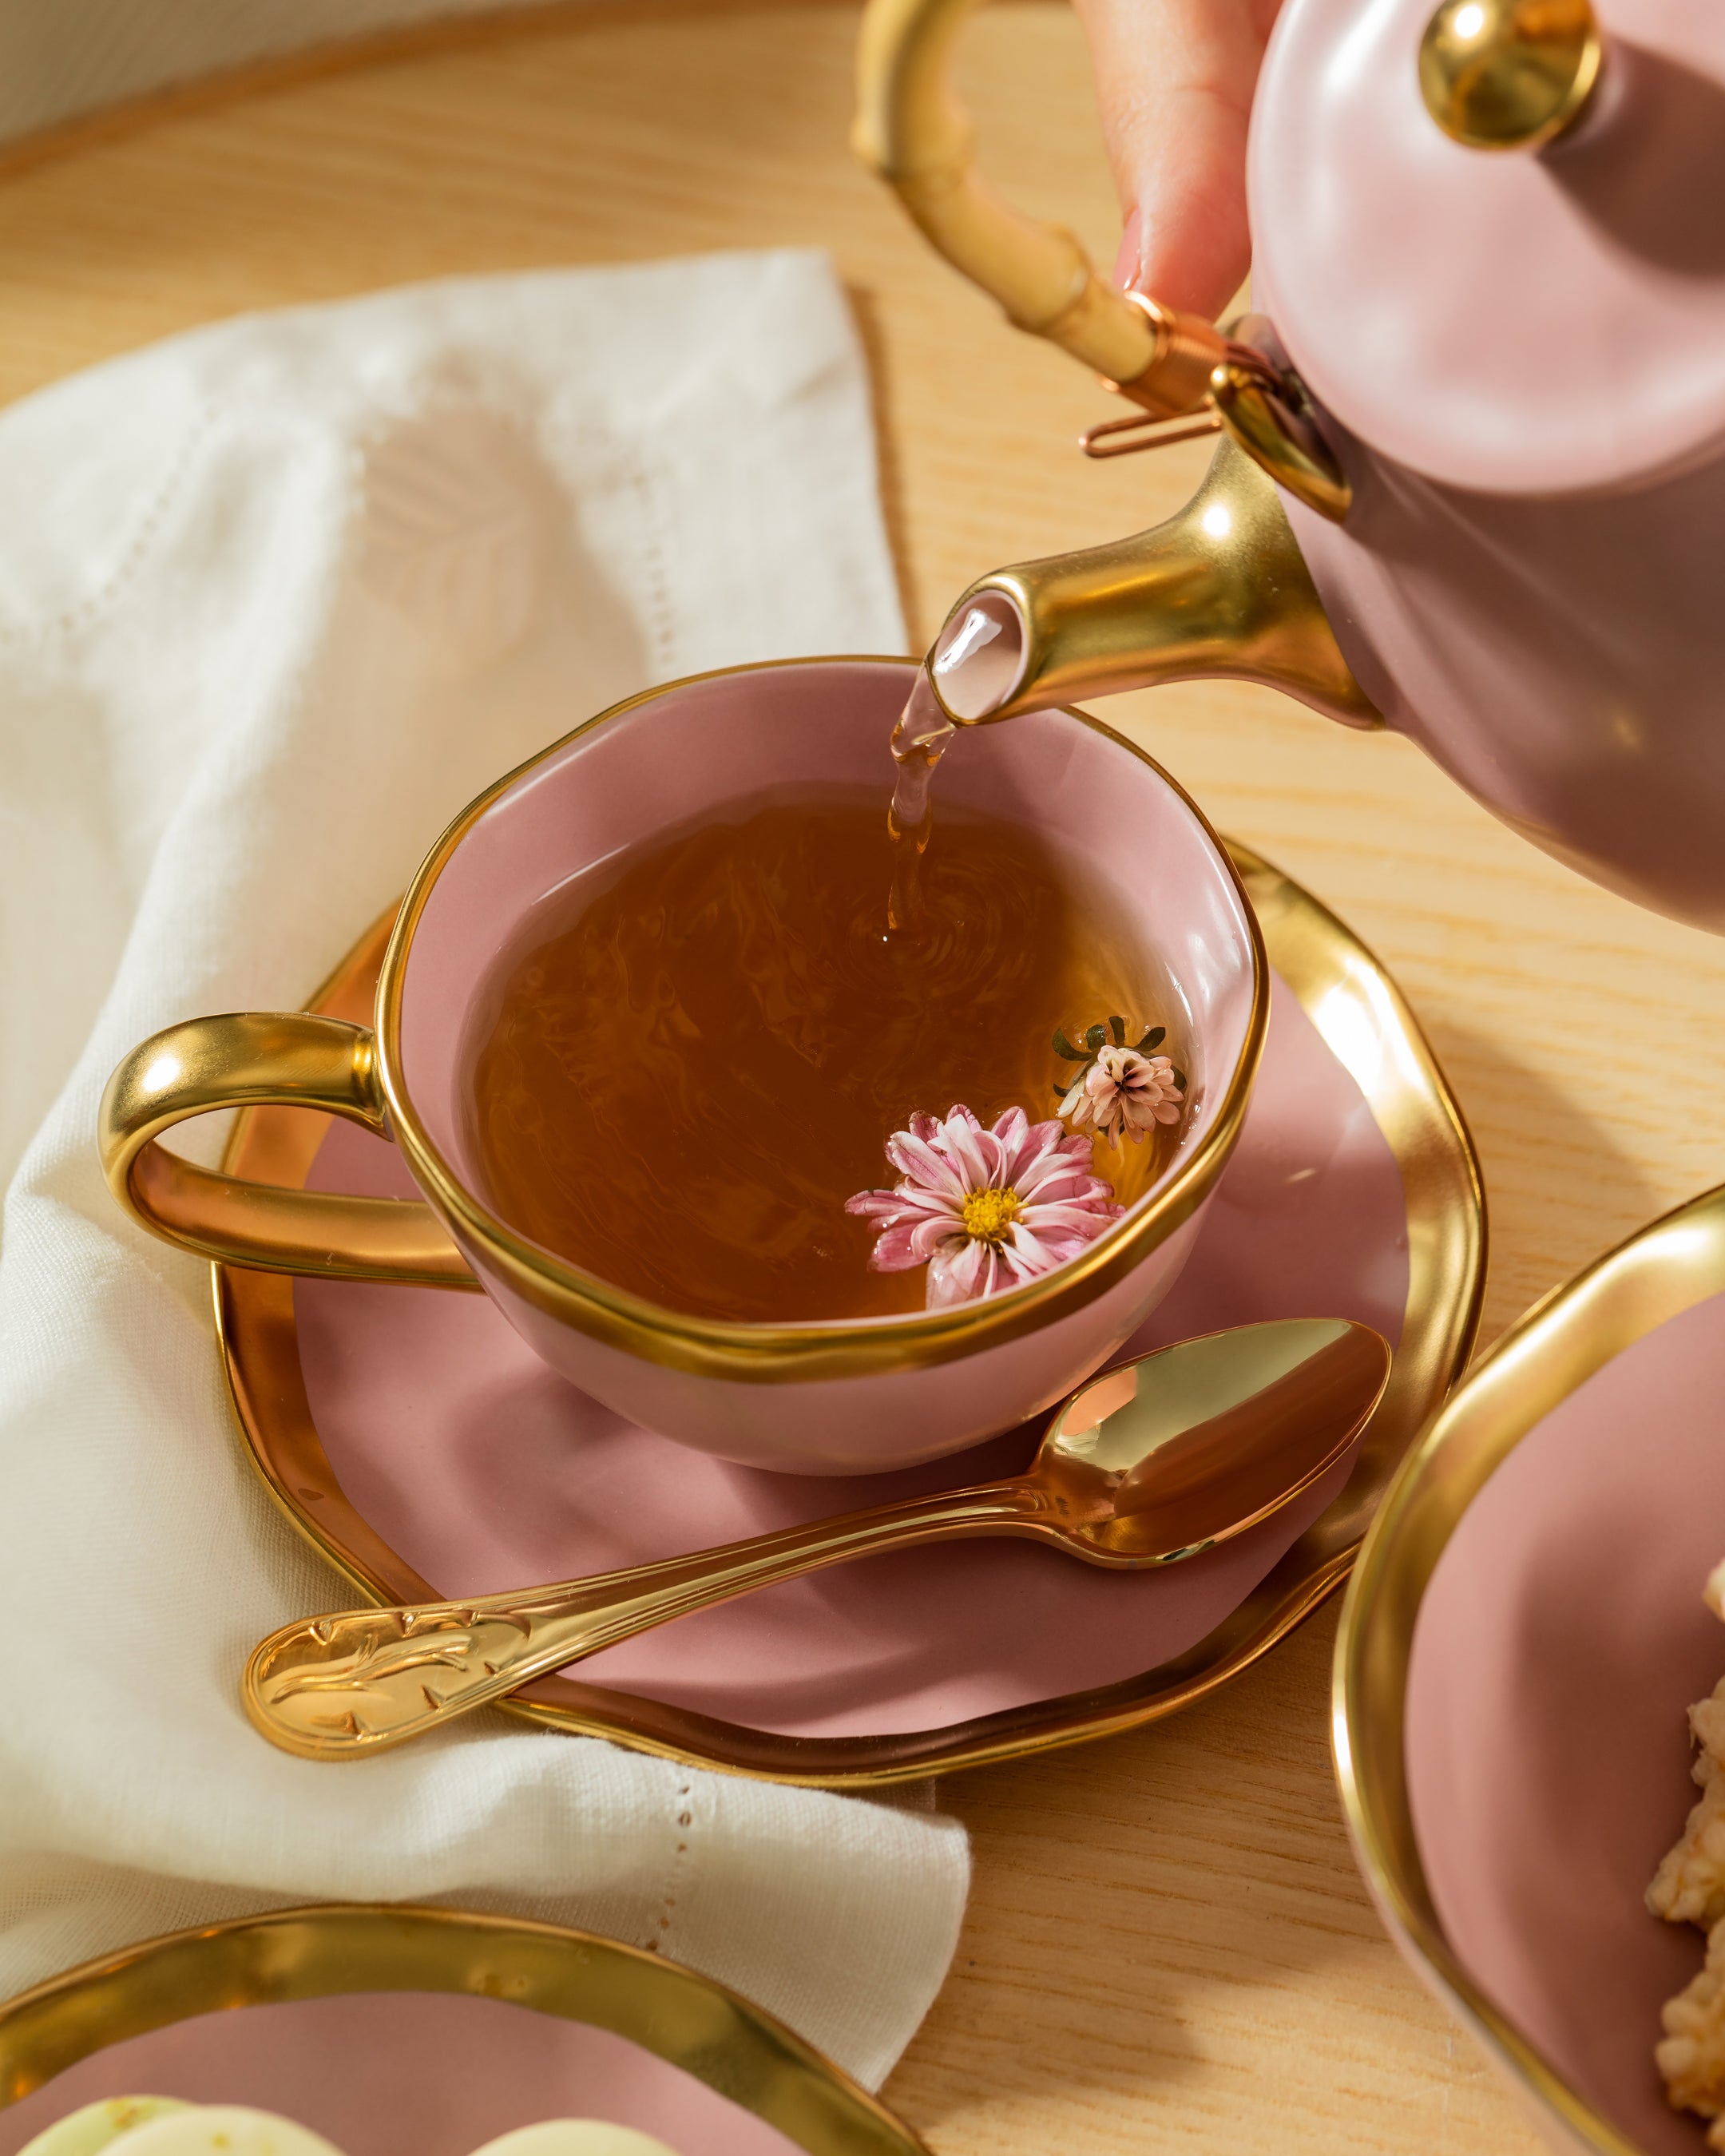 Tea Cup and Saucer Mediterraneo Pink - Tania Bulhões